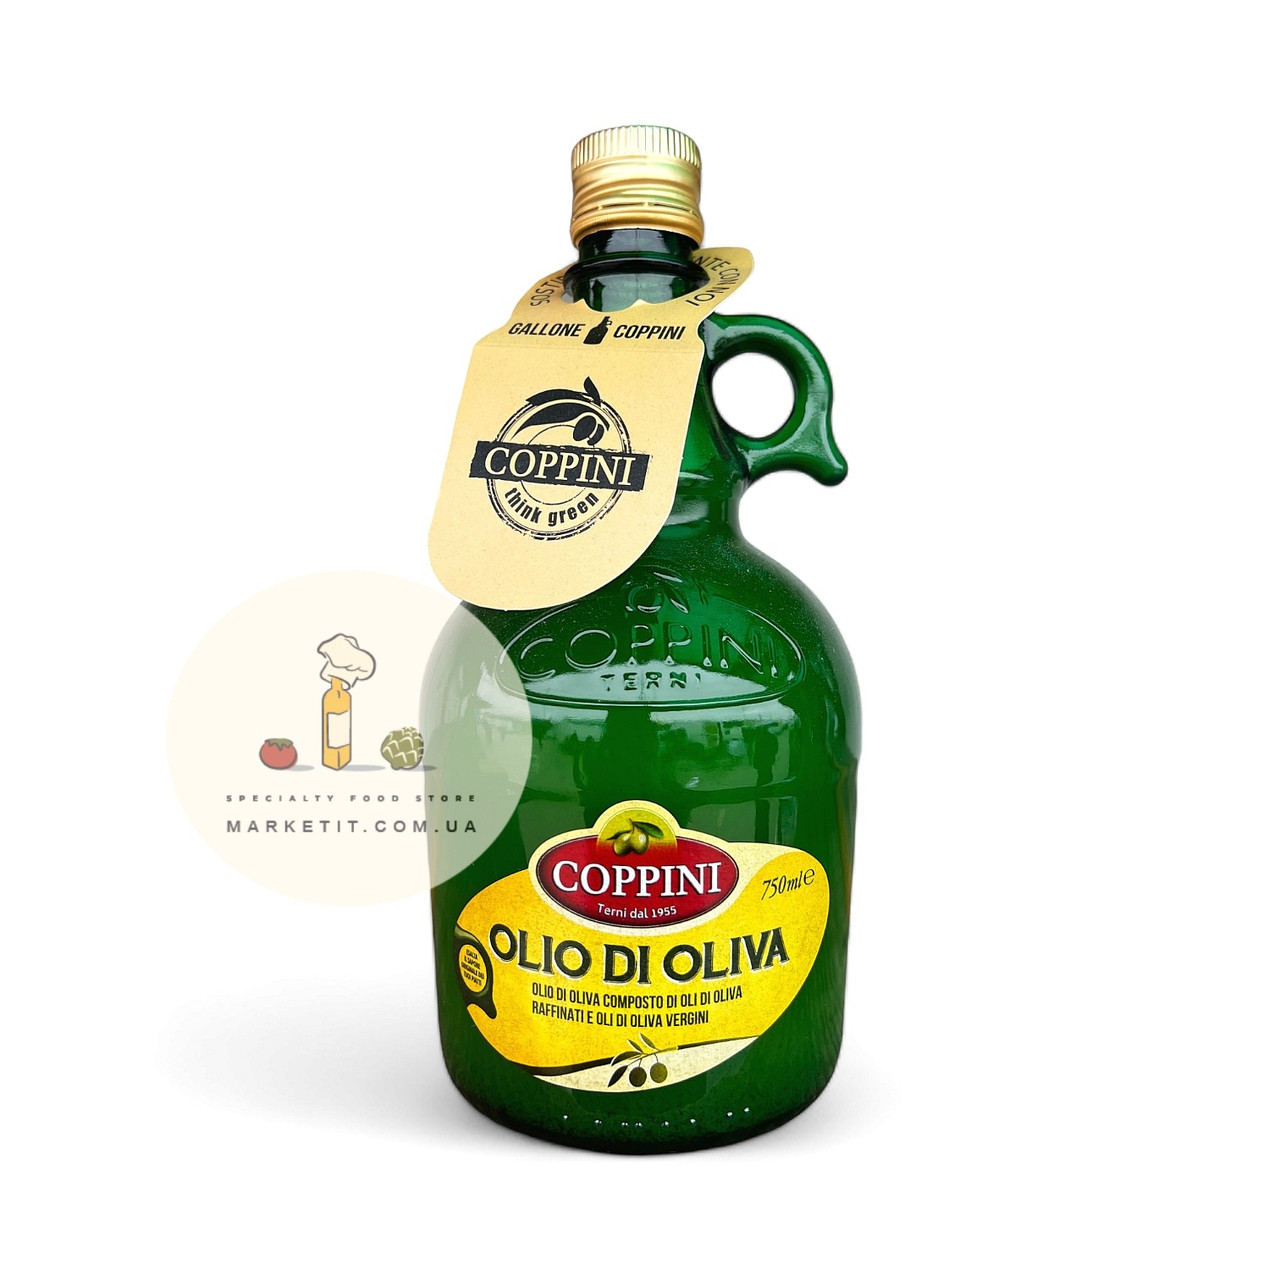 Оливкова олія в графині Coppini Olio di Oliva, суміш рафінованого та холодного пресування 750 мл.